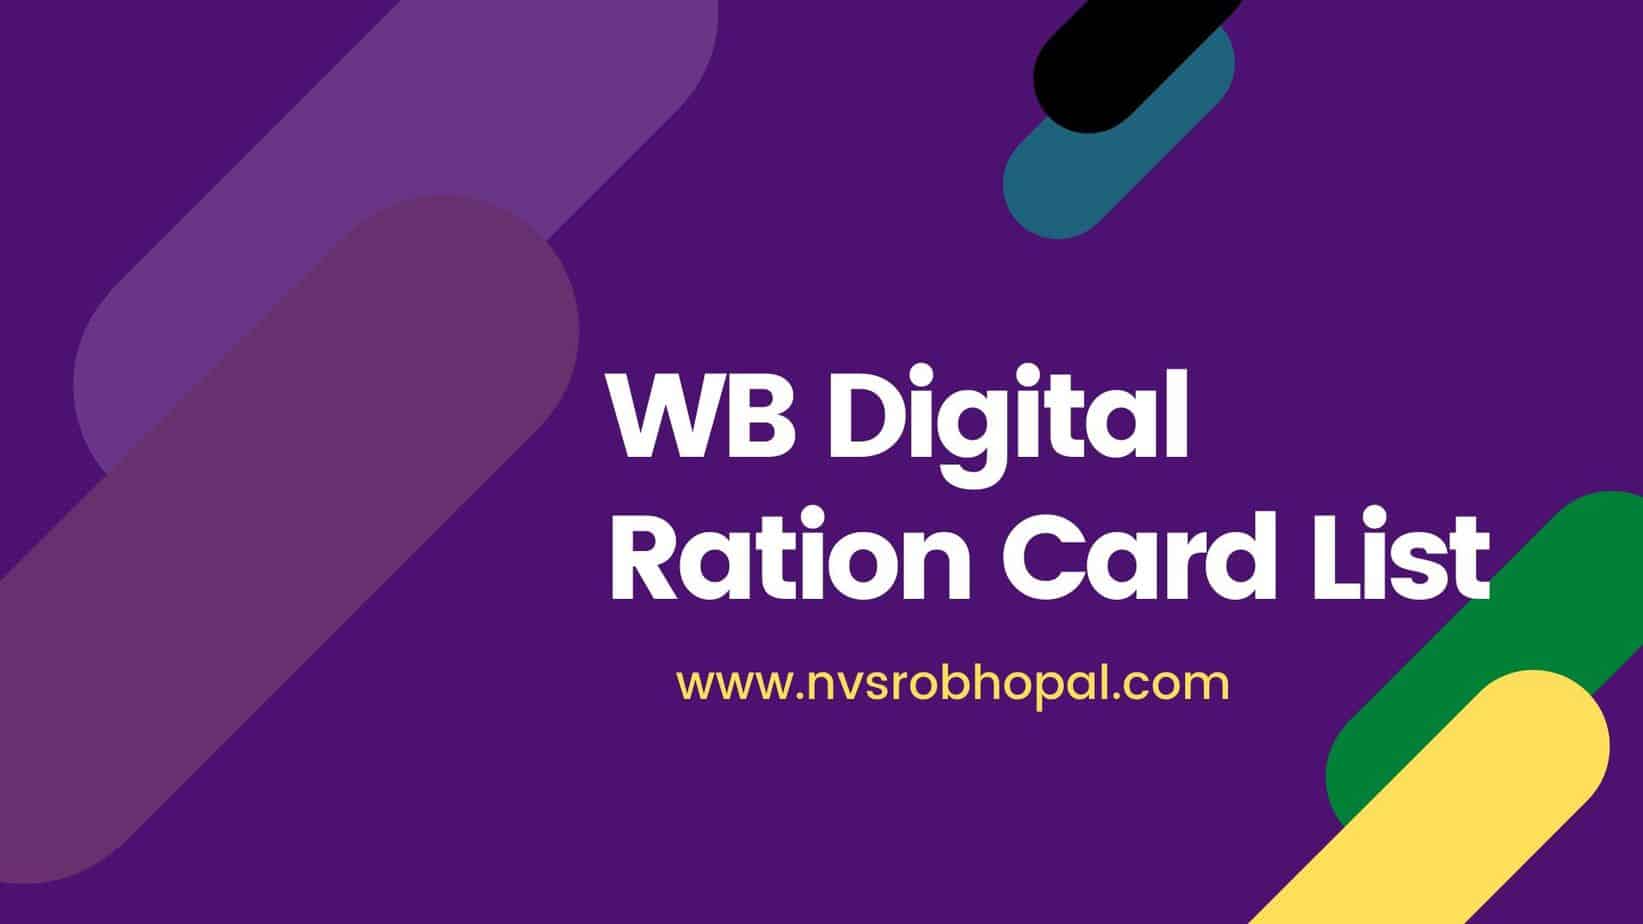 WB-Digital-Ration-Card-List